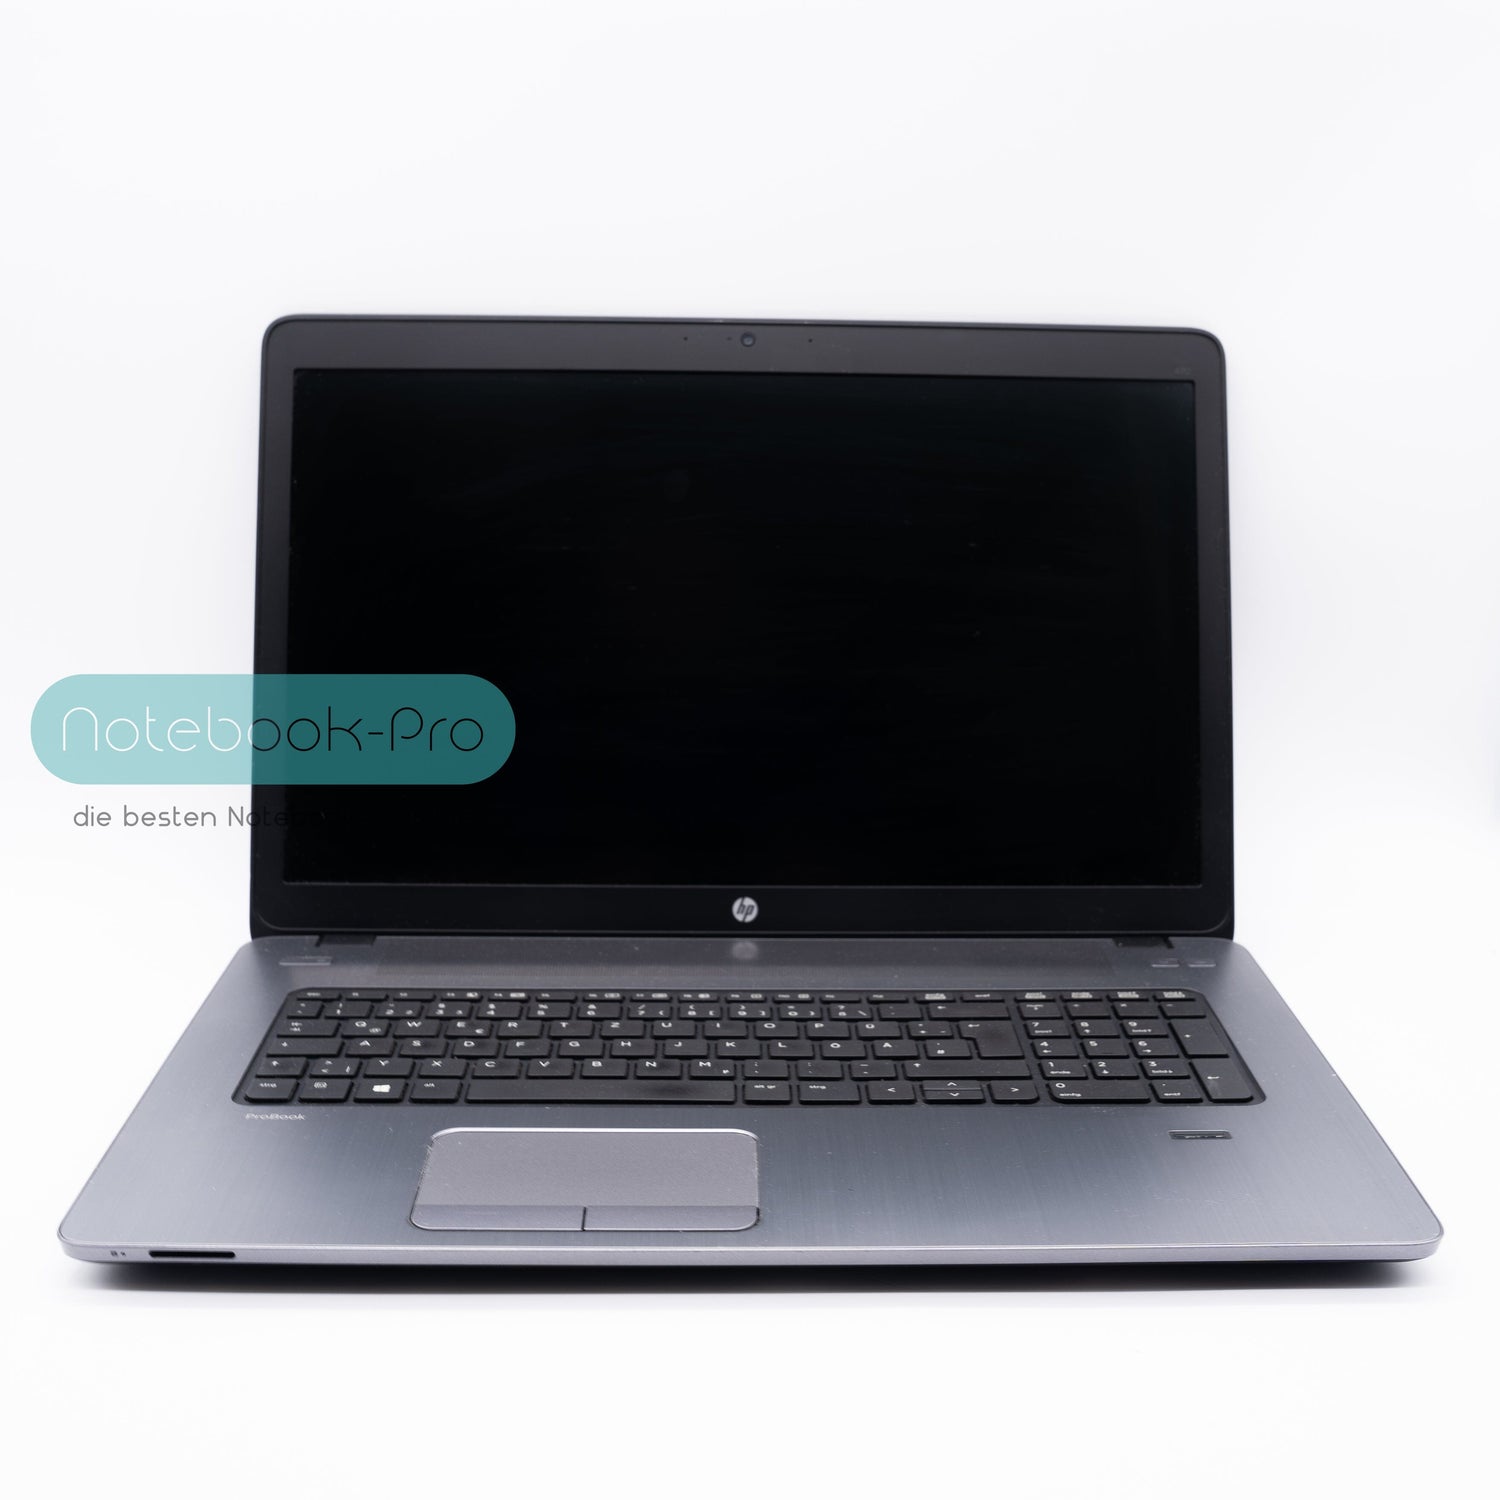 HP ProBook 470 Intel Core i7-5500U 16GB 17,3 HD+ DISPLAY 256GB SSD Laptops Notebook-Pro 